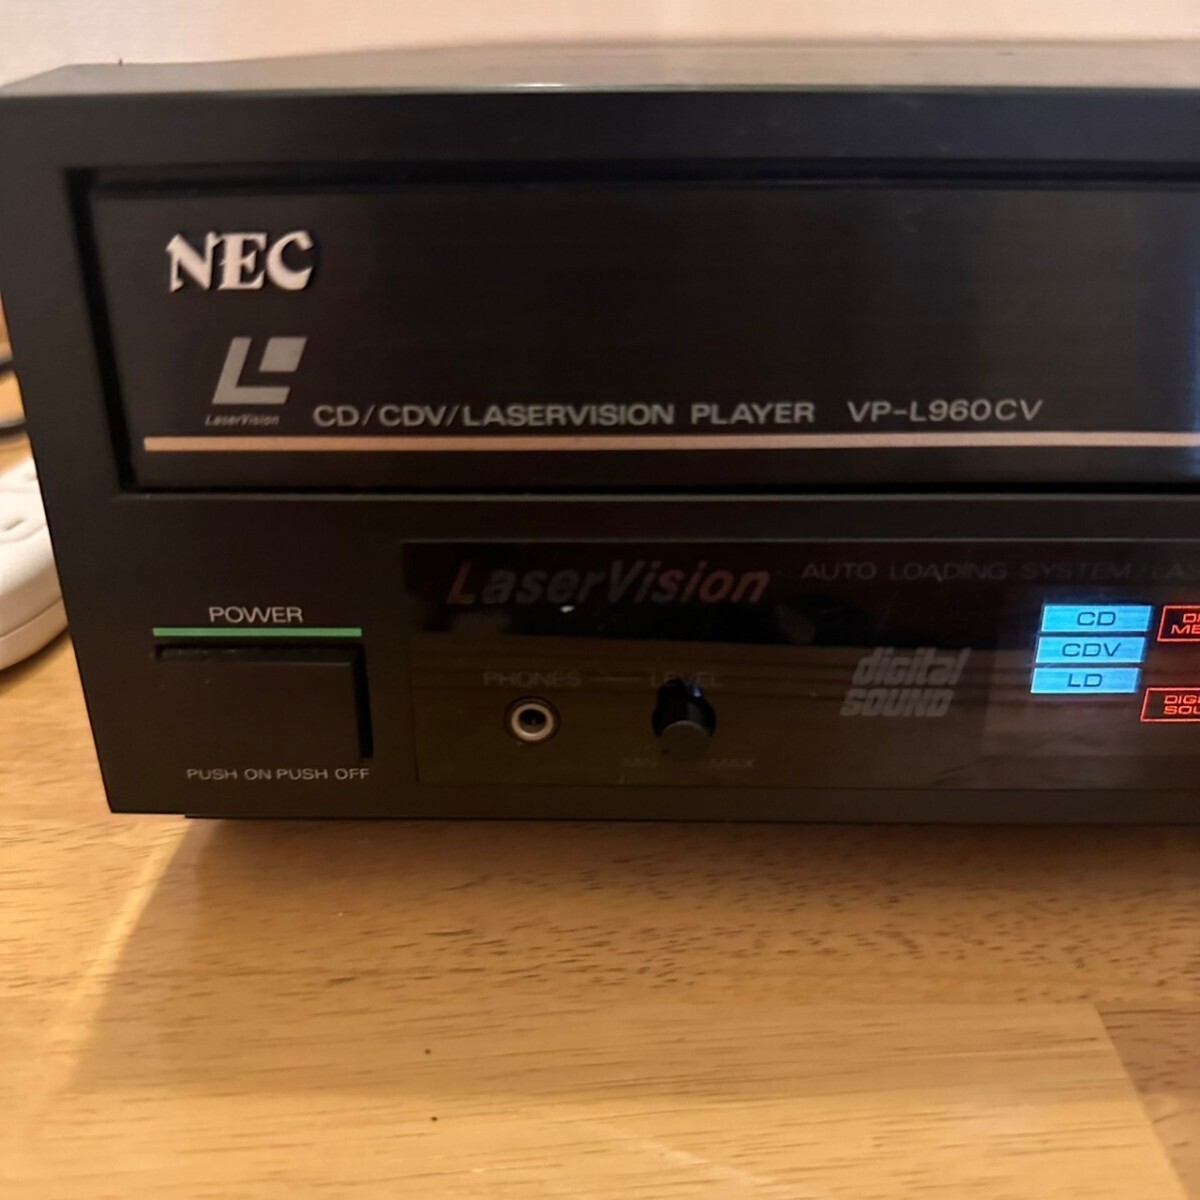 NEC laser disk player VP-L960CV